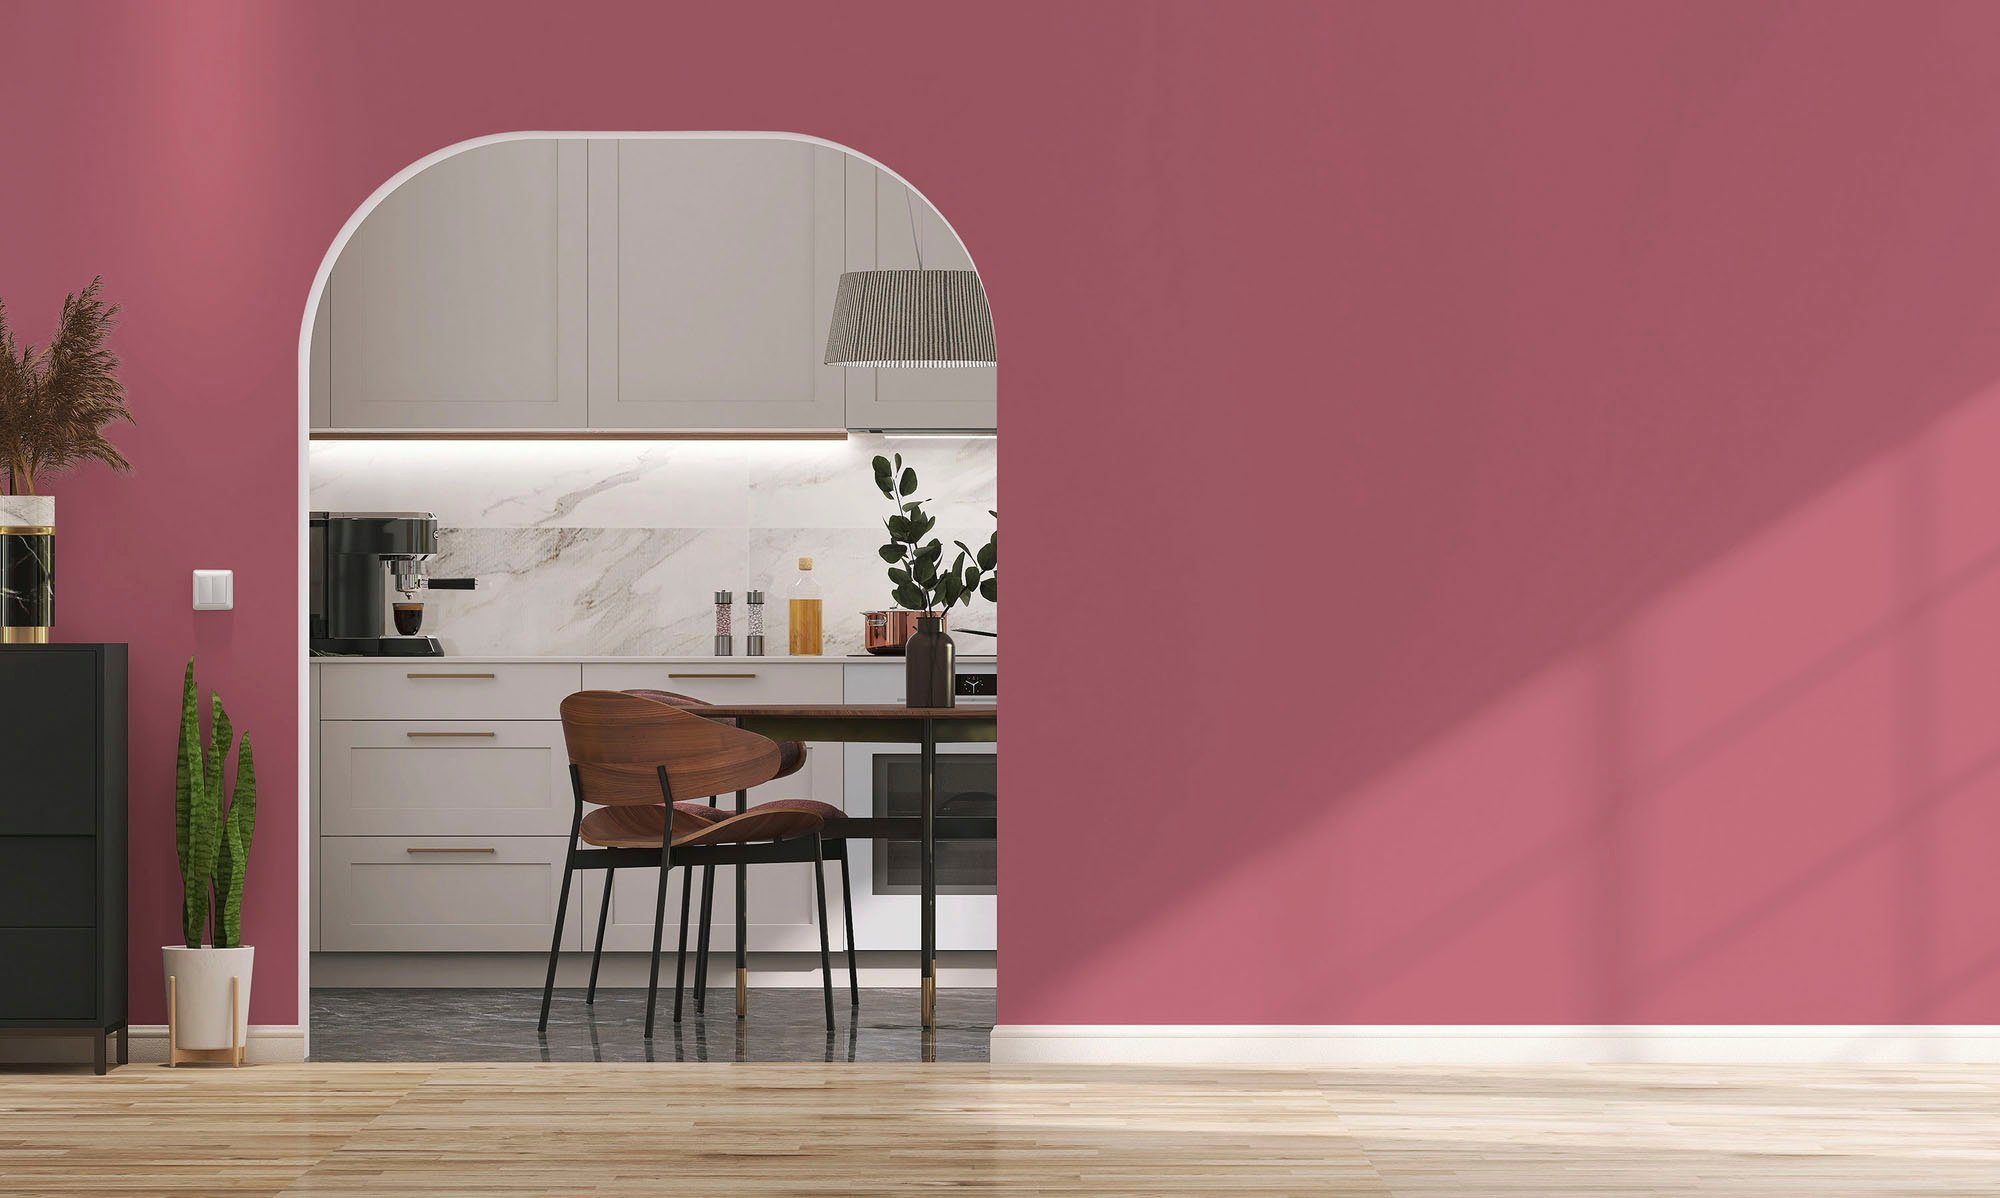 Tuchmatt Schlafzimmer, peachy Farbwelt c2032 PURO und Création A.S. Pink peachy Premium pink, für ideal Wandfarbe pink Küche, Wohnzimmer, Innenwandfarbe Flur